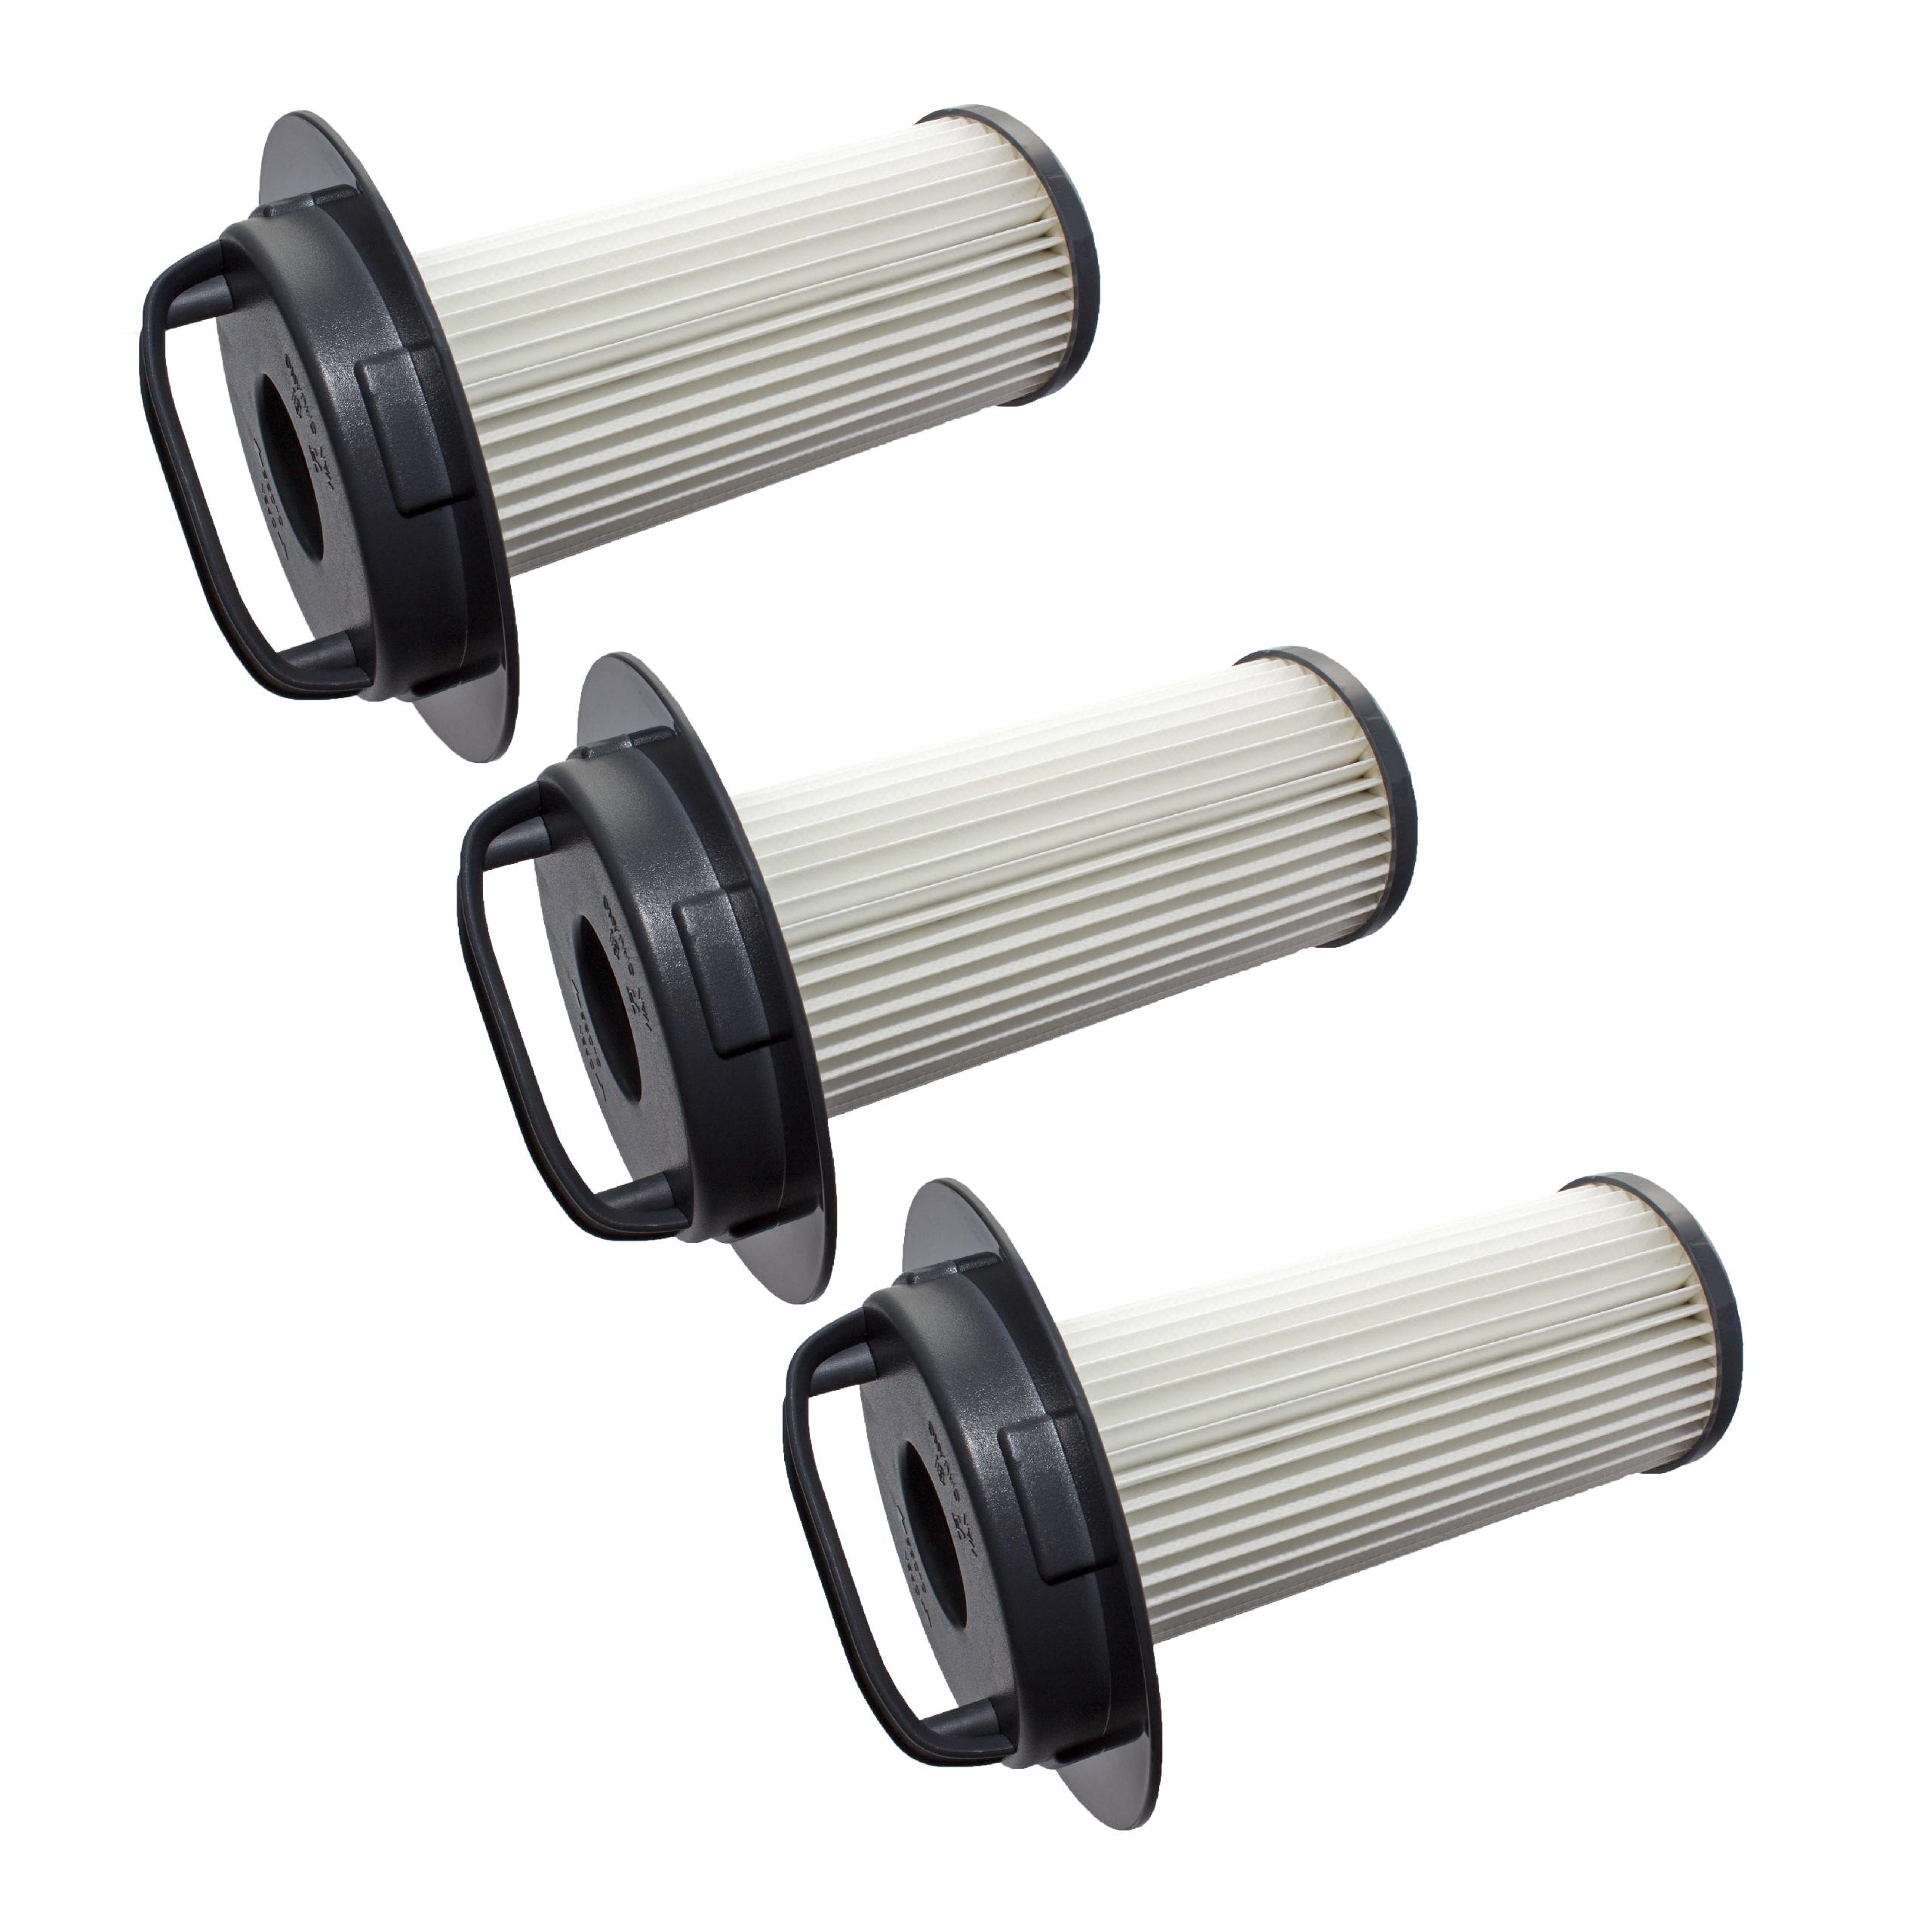 3x Filtro sostituisce Philips 432200524860, 432200517520 per aspirapolvere - filtro HEPA, nero / bianco